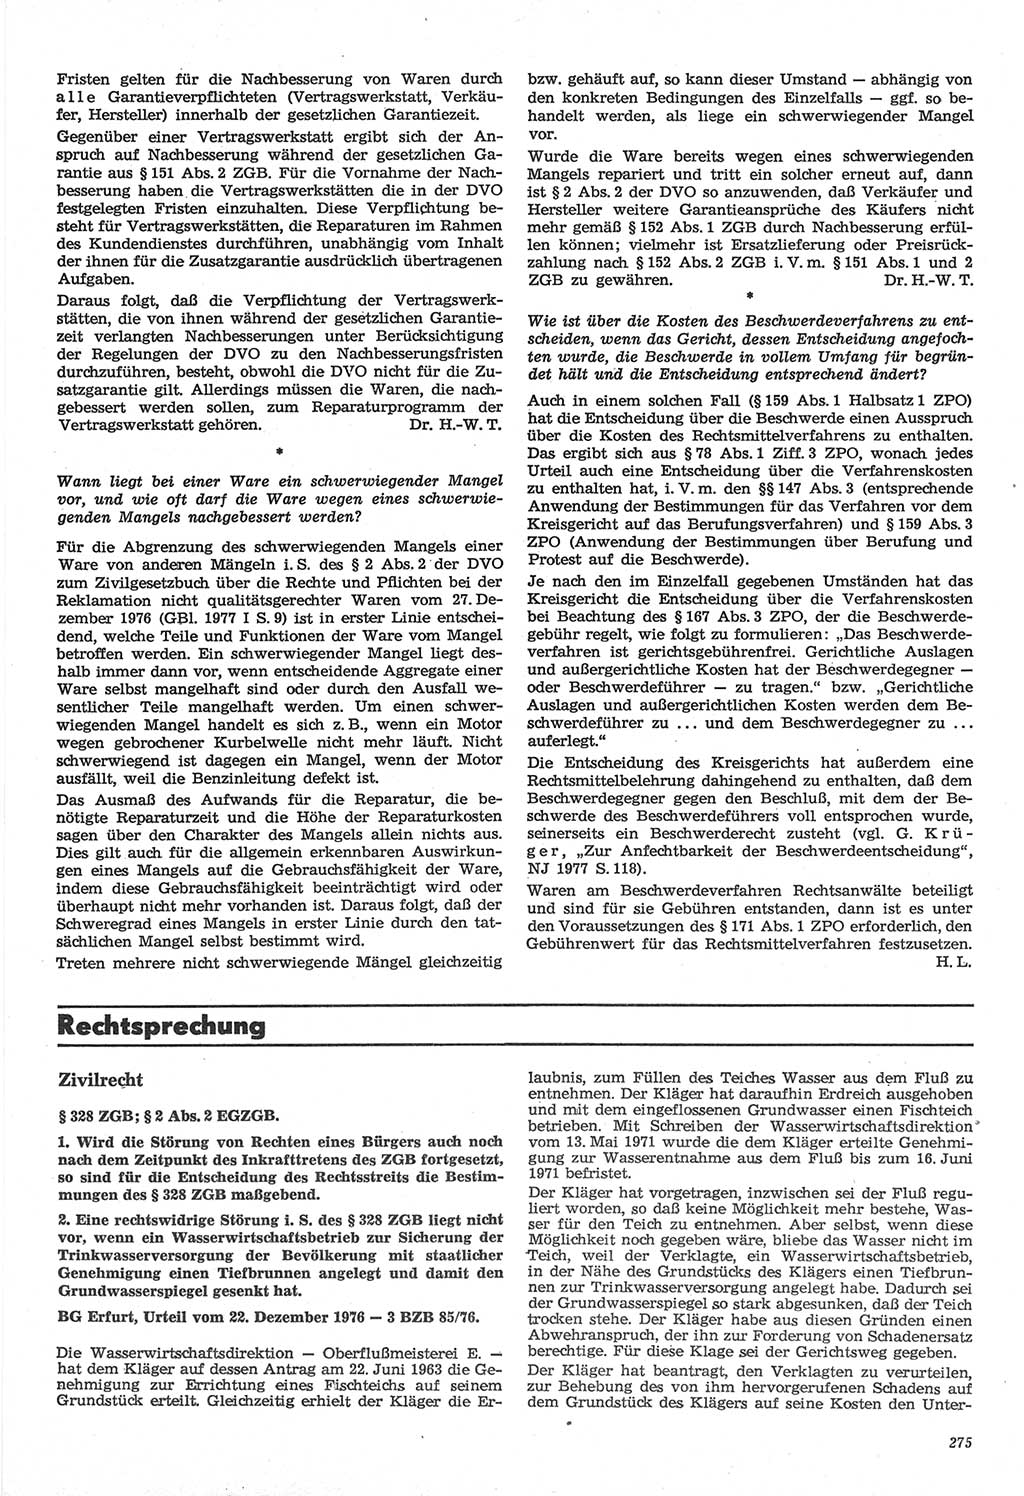 Neue Justiz (NJ), Zeitschrift für Recht und Rechtswissenschaft-Zeitschrift, sozialistisches Recht und Gesetzlichkeit, 31. Jahrgang 1977, Seite 275 (NJ DDR 1977, S. 275)